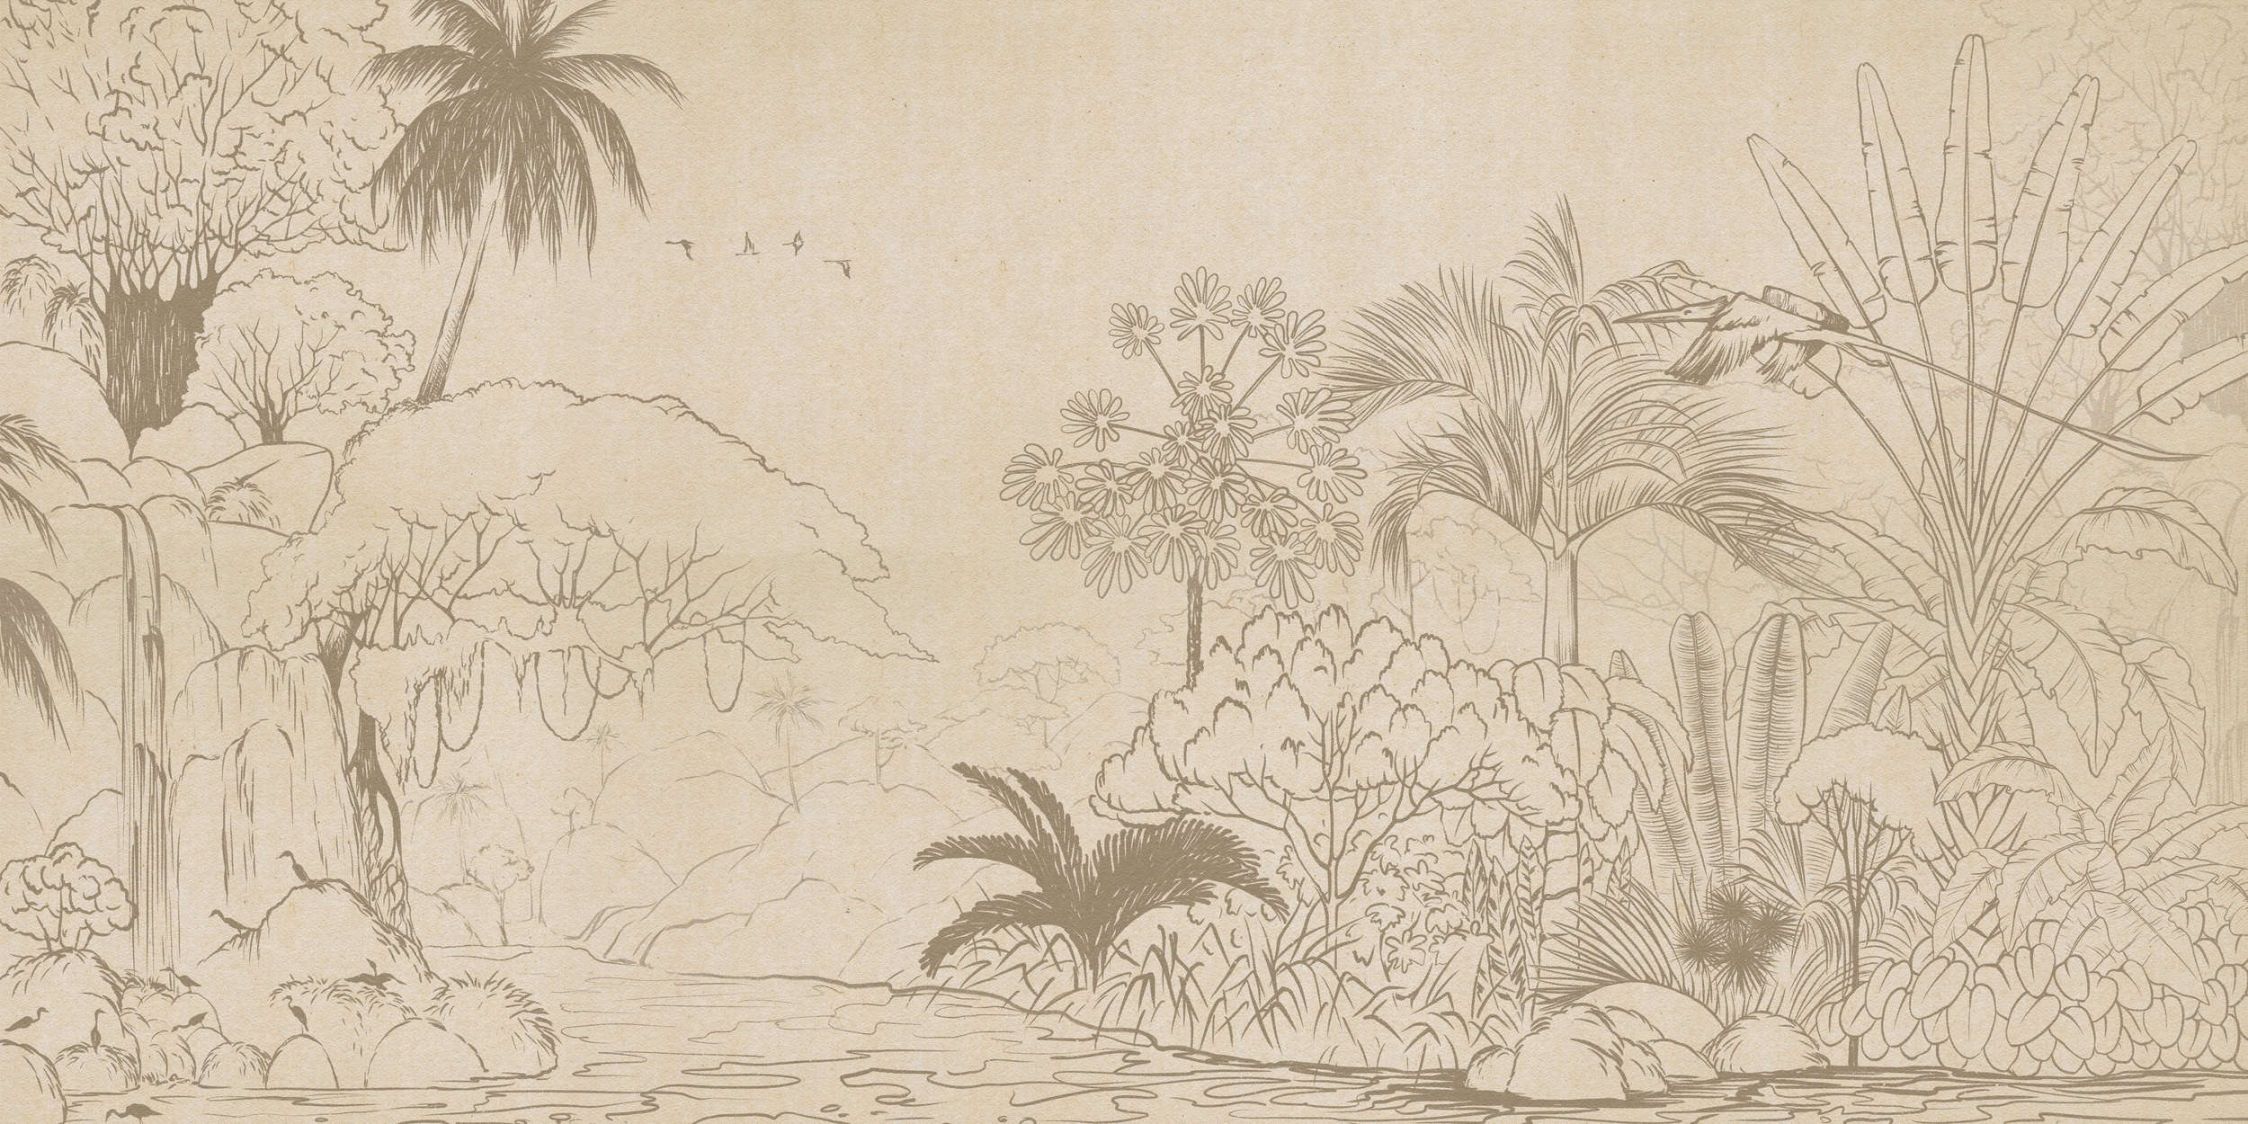             Fotobehang »oasis« - Jungle in tekenstijl met handgemaakte papierlook - mat, glad vlies
        